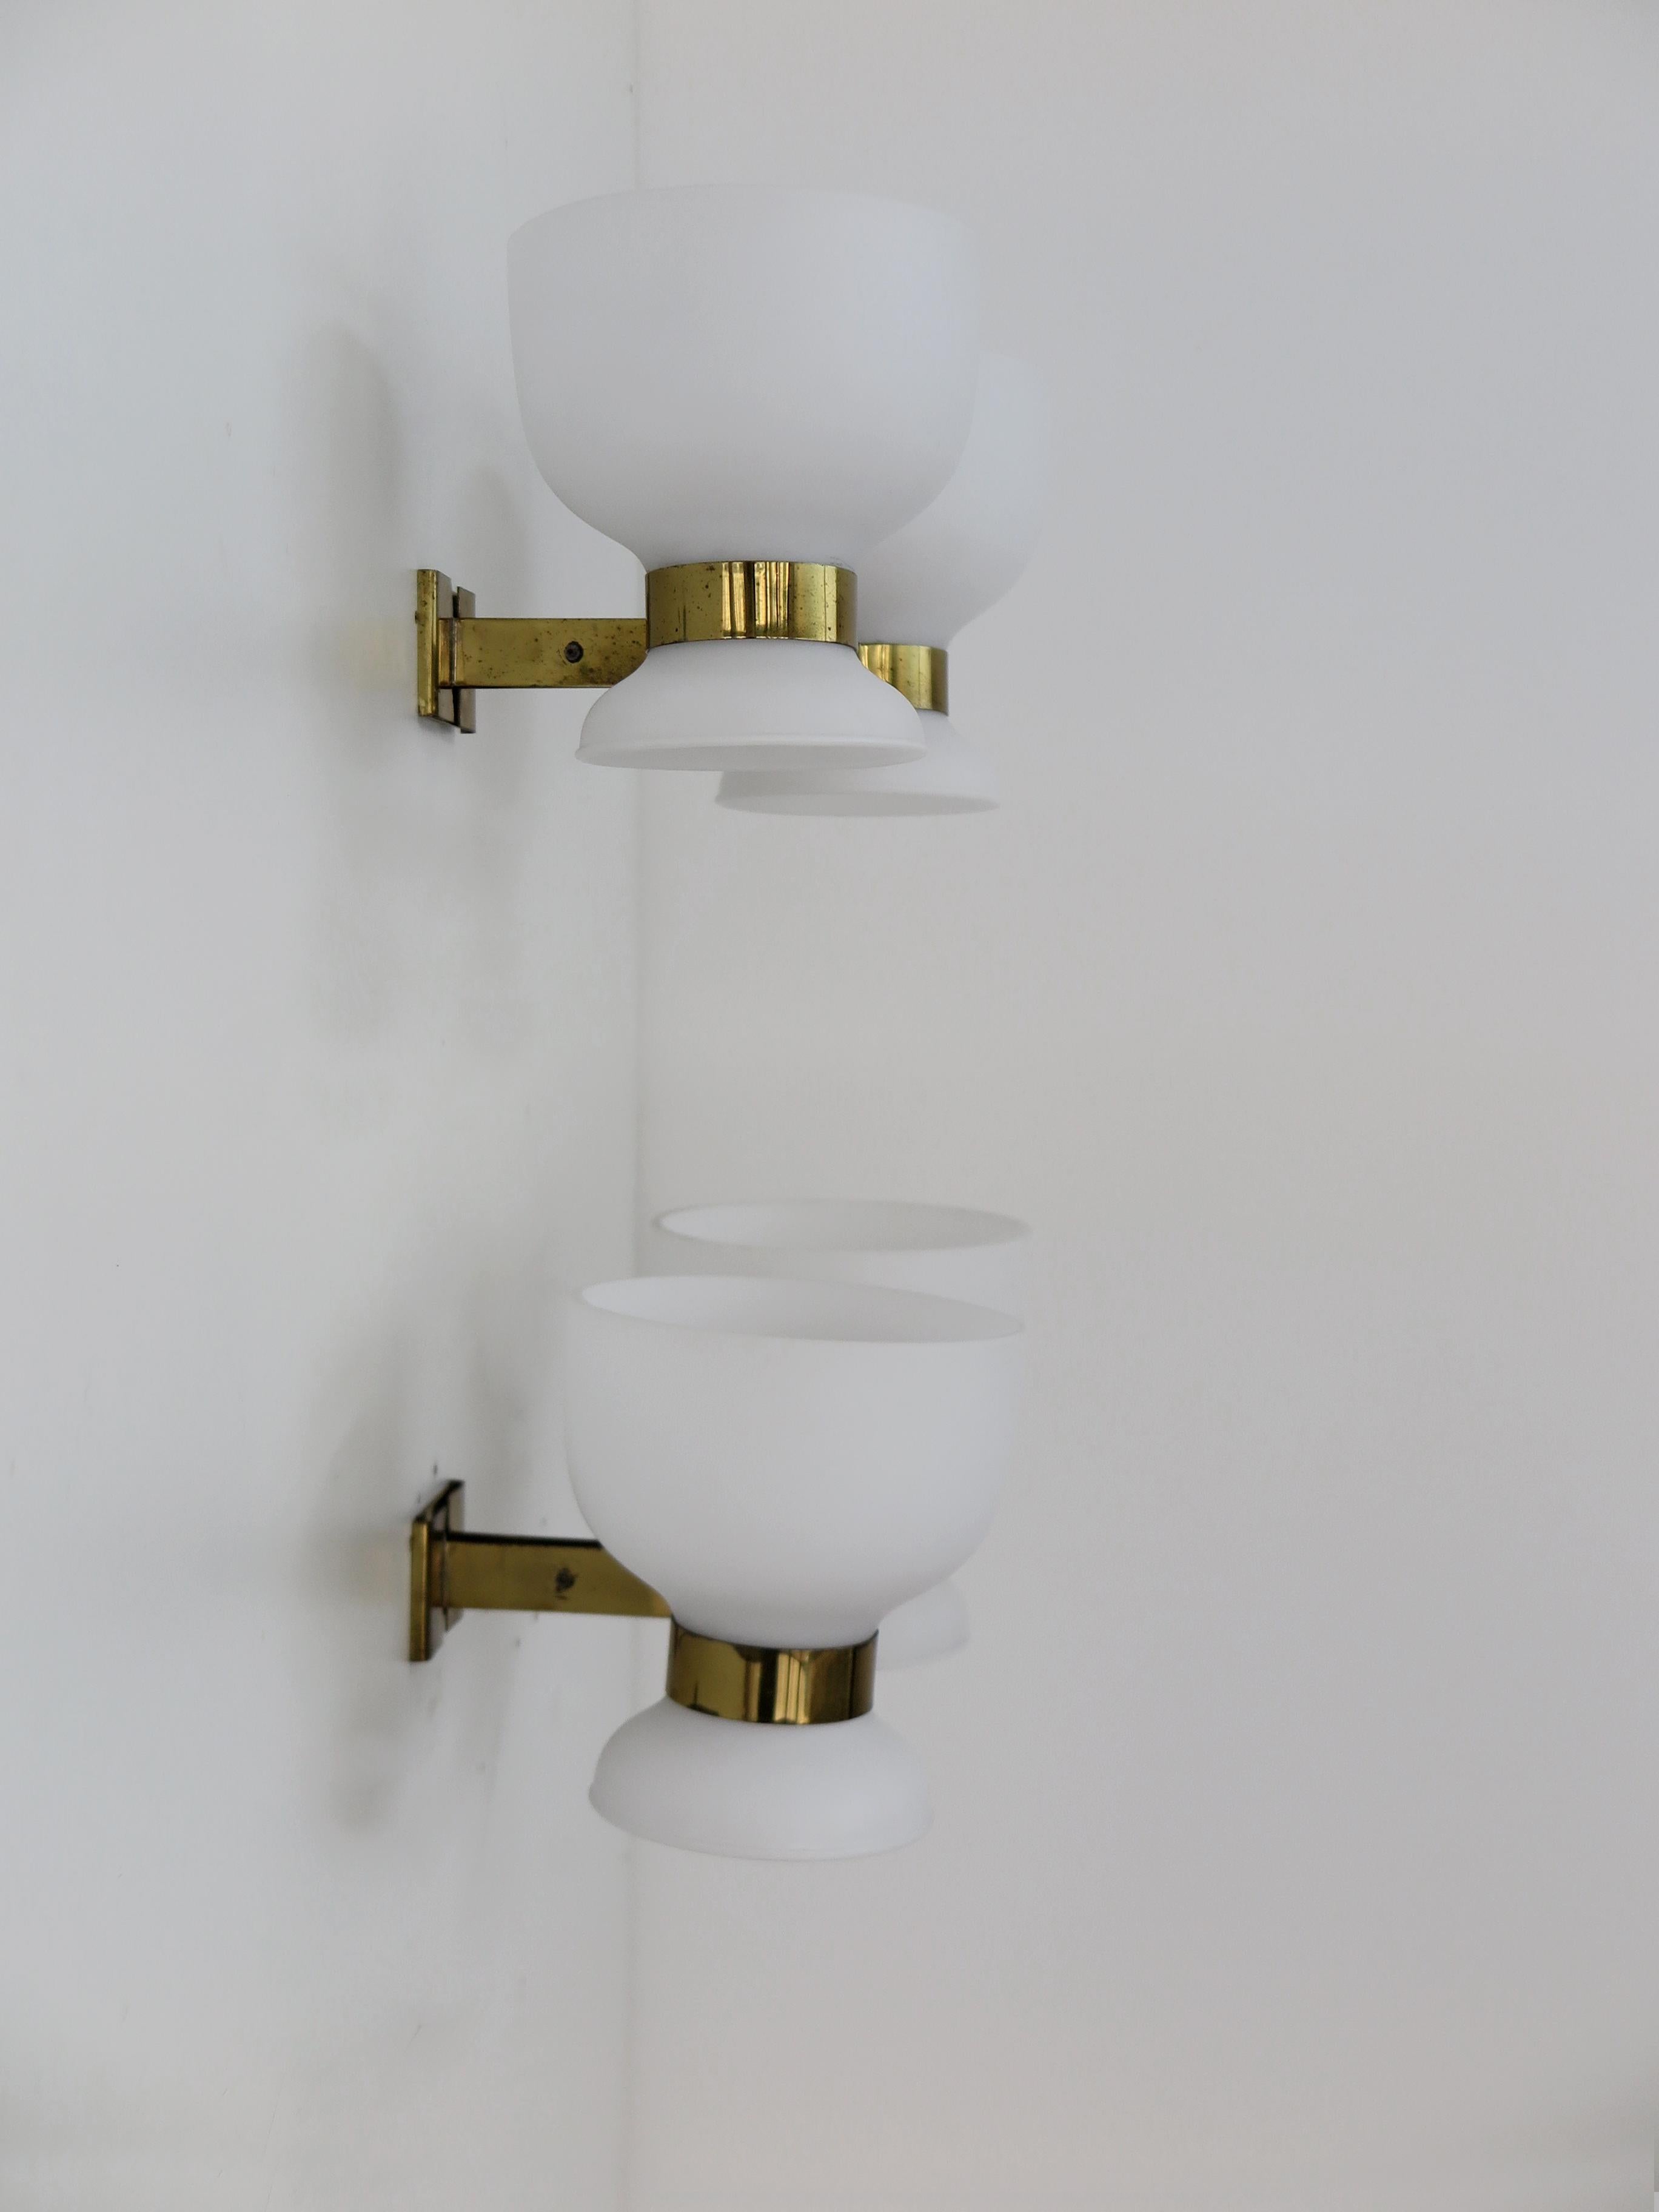 Stilnovo Italian Midcentury Modern Design Brass Glass Sconces Wall Lights 1950s For Sale 1